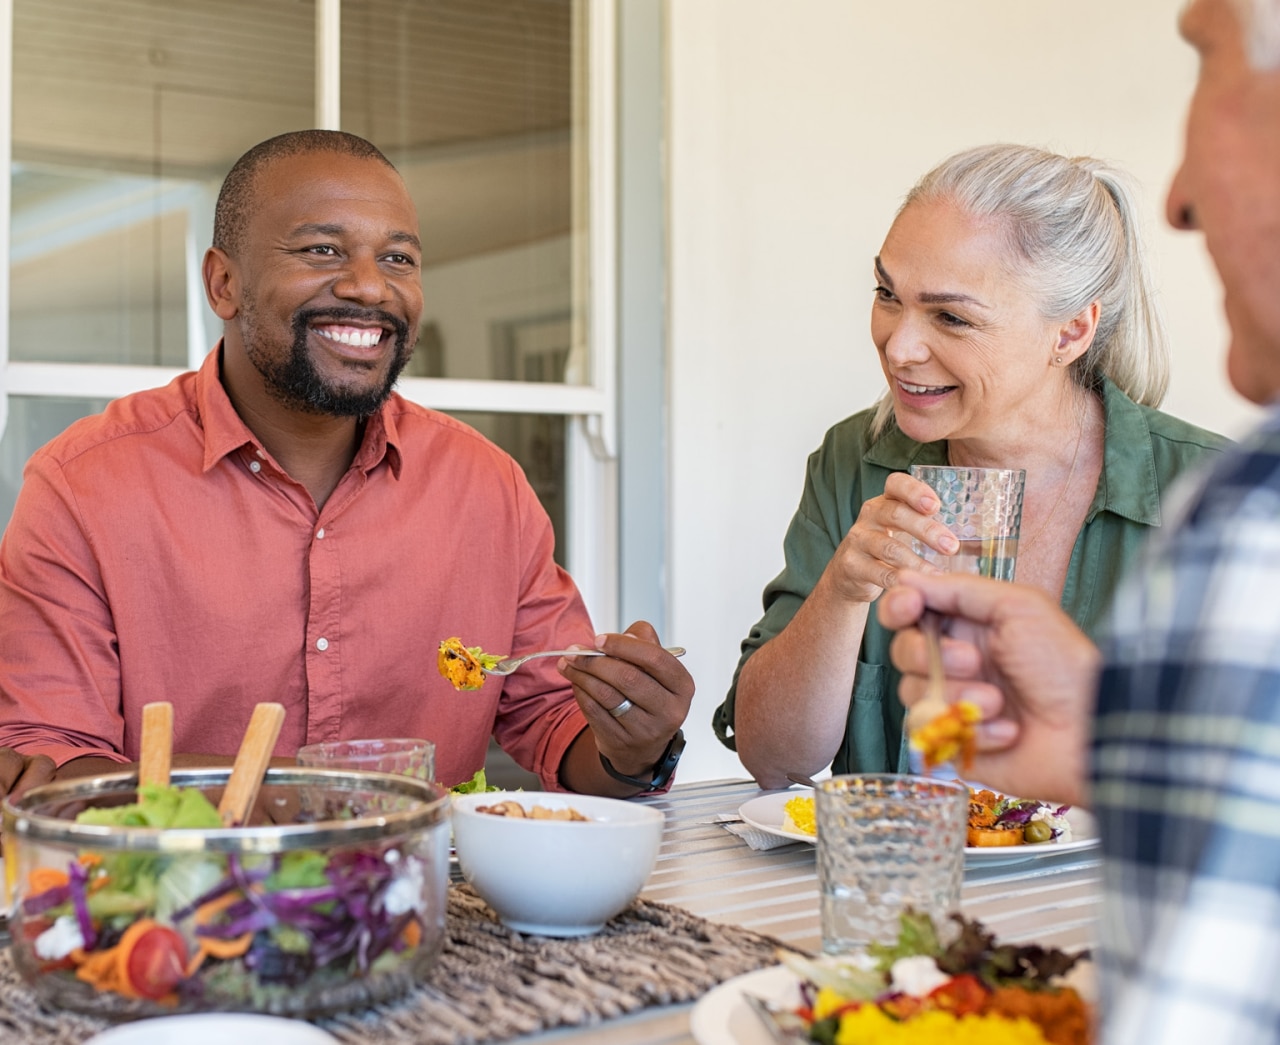 Glada, leende vänner som äter lunch tillsammans hemma Mogna multietniska personer som firar en lycklig tilldragelse med att äta hälsosam mat. En grupp bestående av ett äldre par och ett afrikanskt par som pratar under en måltid.